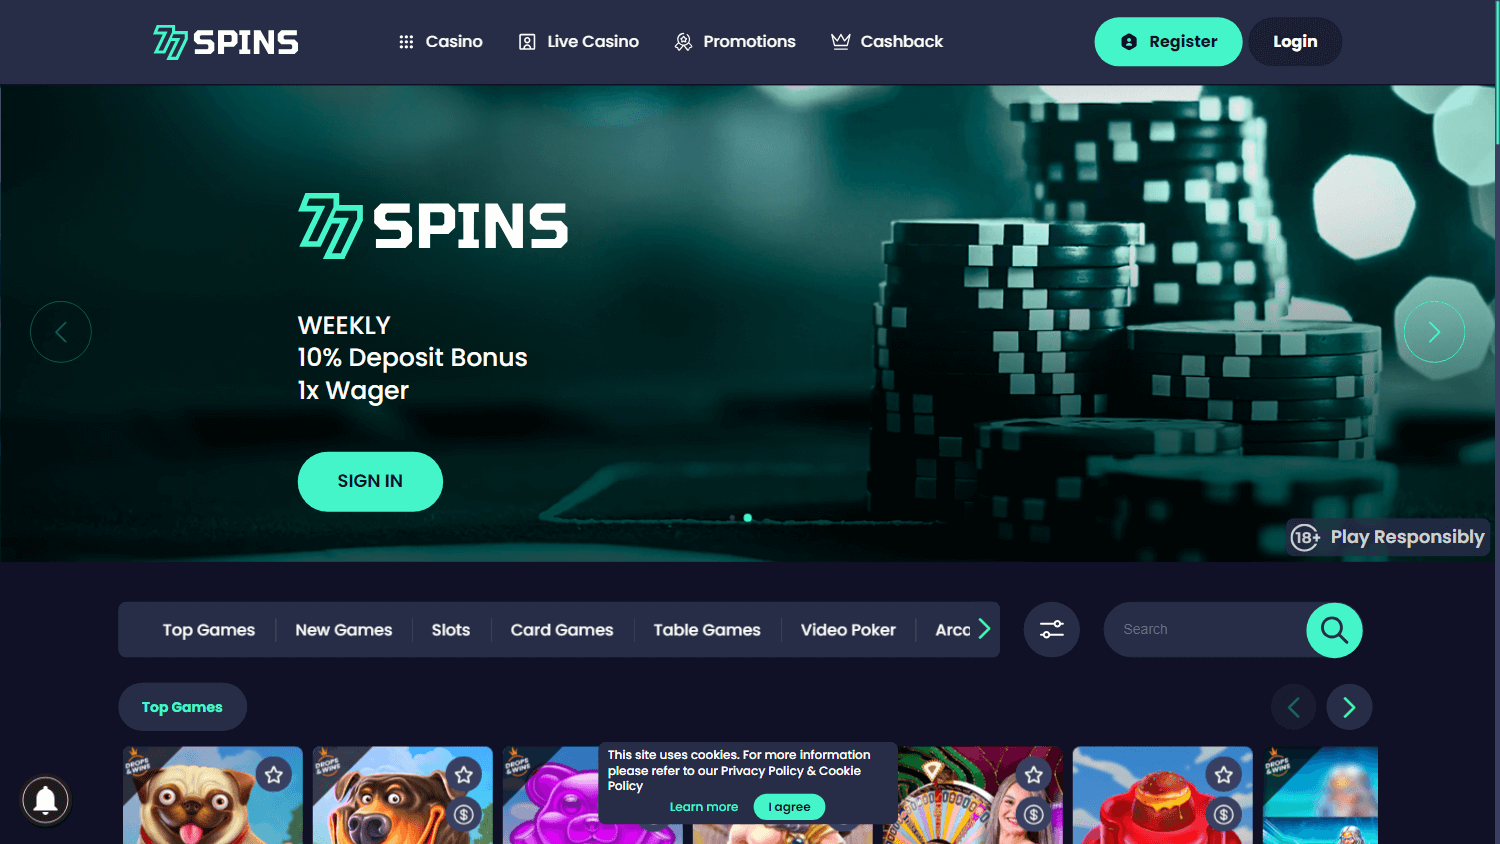 77spins_casino_homepage_desktop